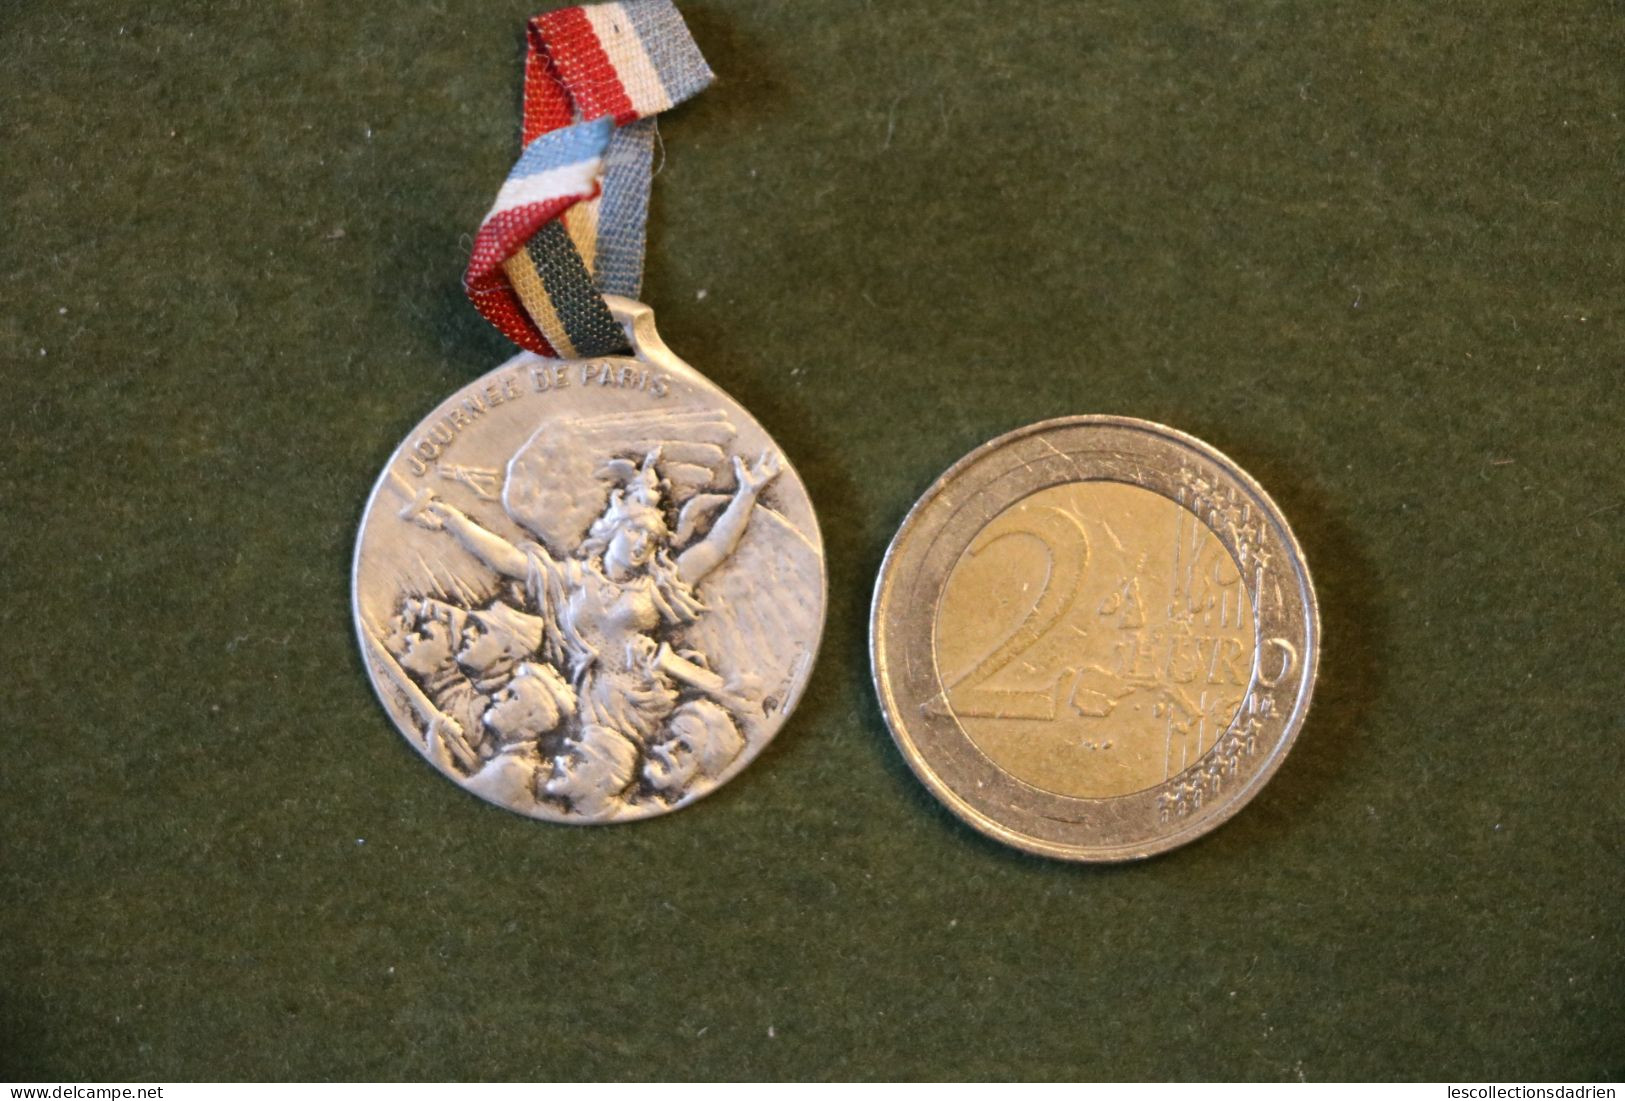 Médaille Française Journée De Paris14-18 - French Medal WWI Médaillette Journée - Bargas - Frankrijk